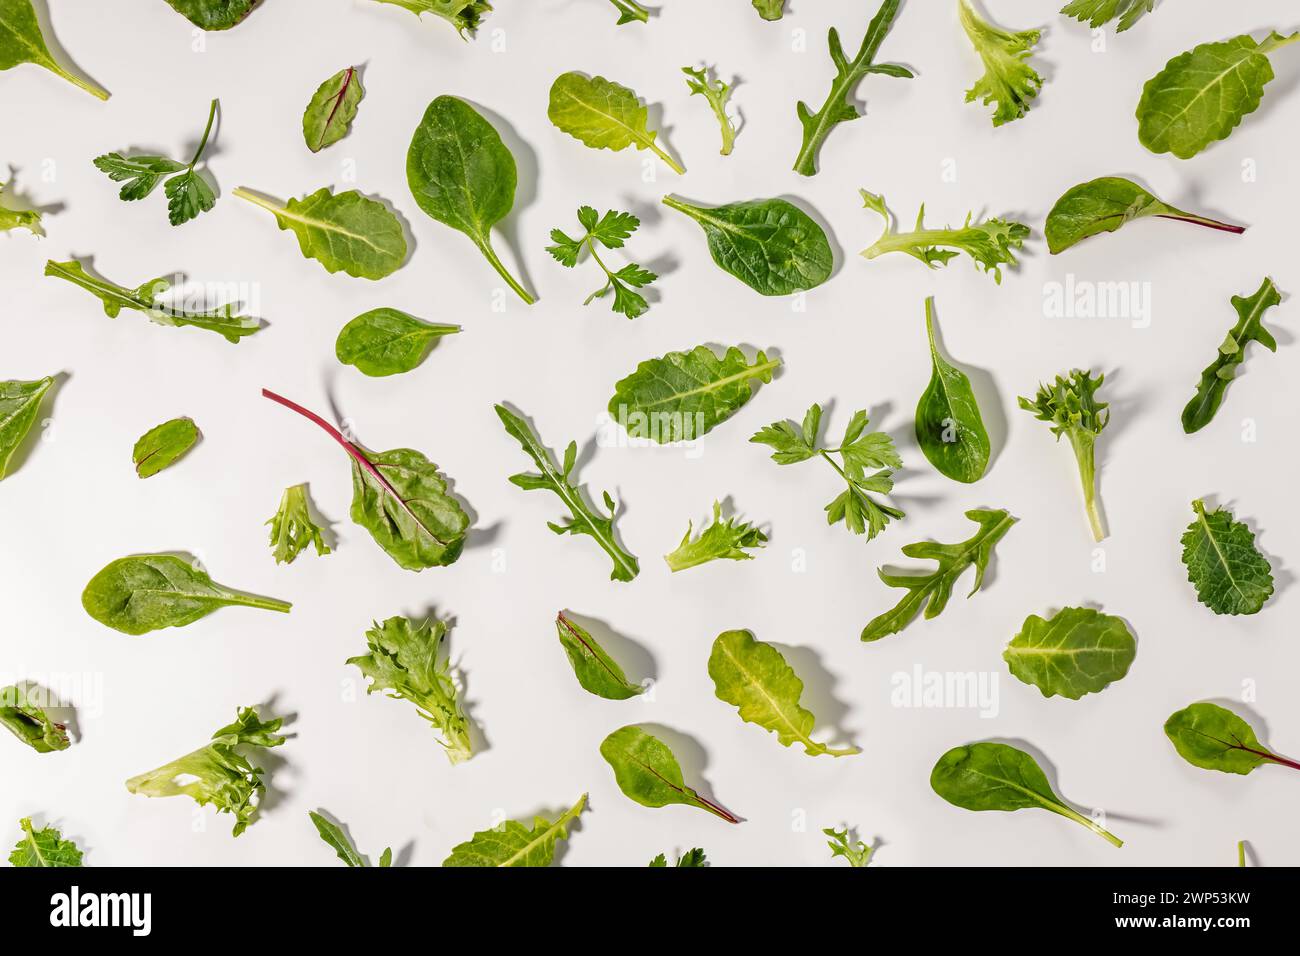 Divers verts isolés sur blanc, nourriture à base de plantes, fond de feuilles vertes Banque D'Images